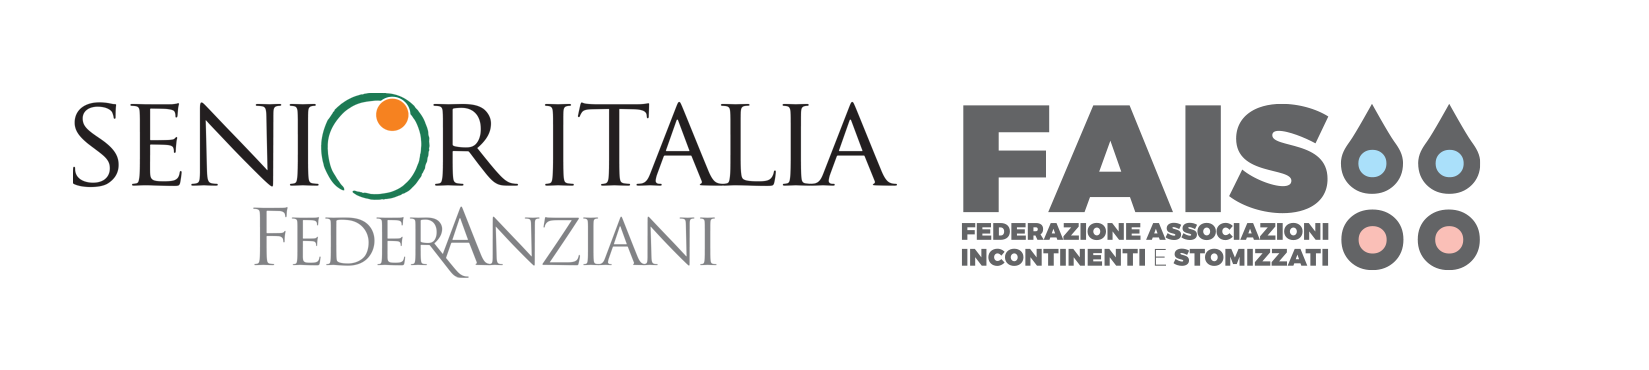 Senior Italia Federanziani, F.A.I.S.